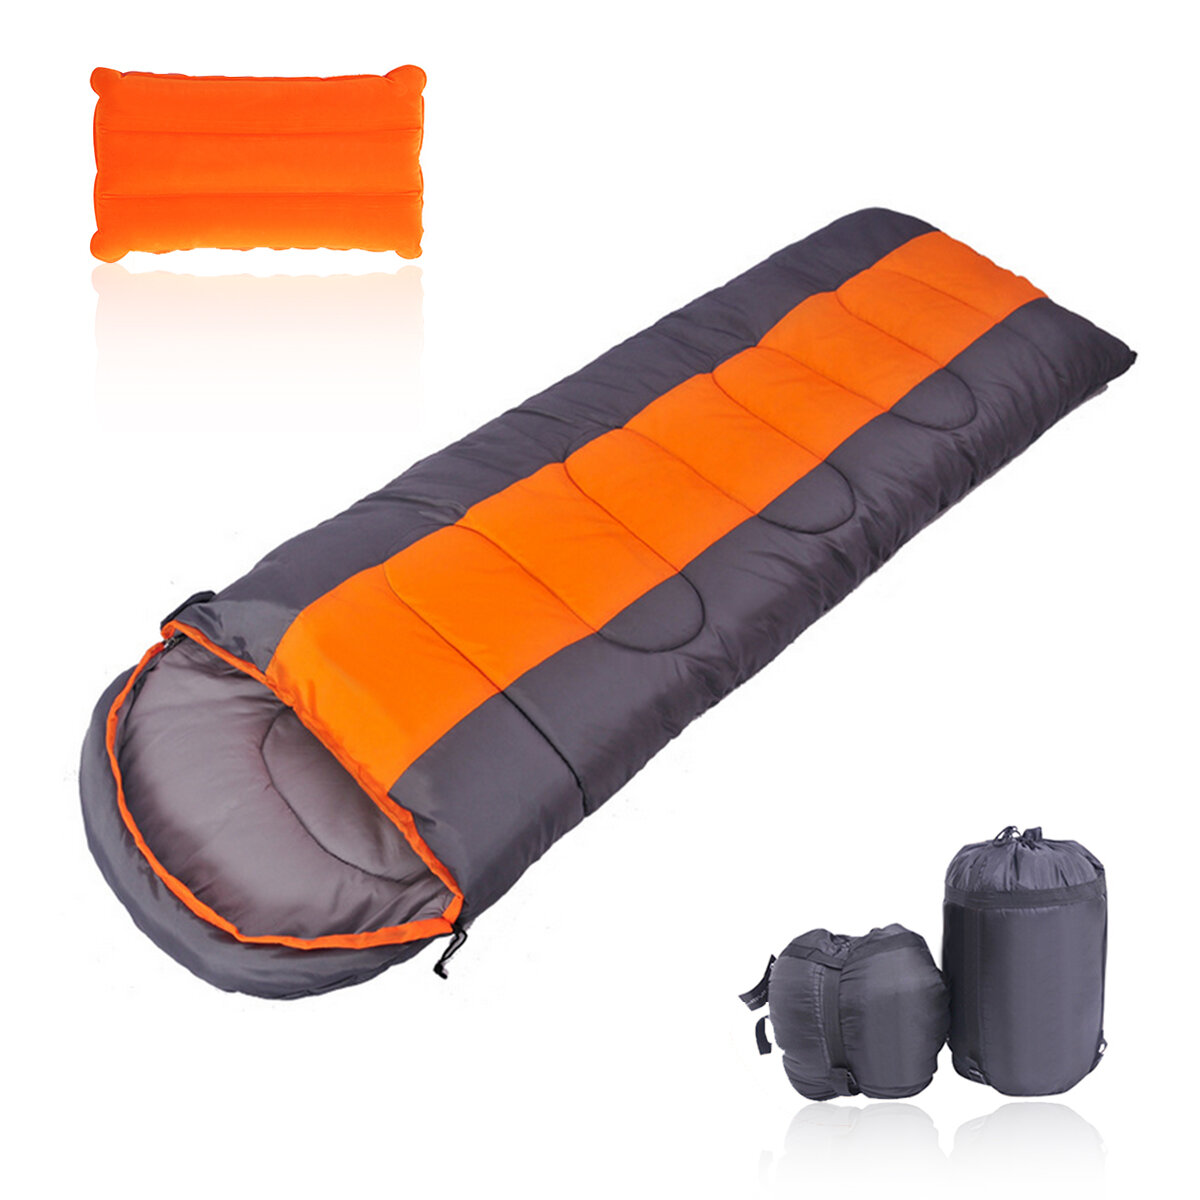 Saco de dormir impermeável Thicken 210T de 1,4 kg com travesseiro, portátil e leve para camping, caminhadas e dormir ao ar livre para uma única pessoa.